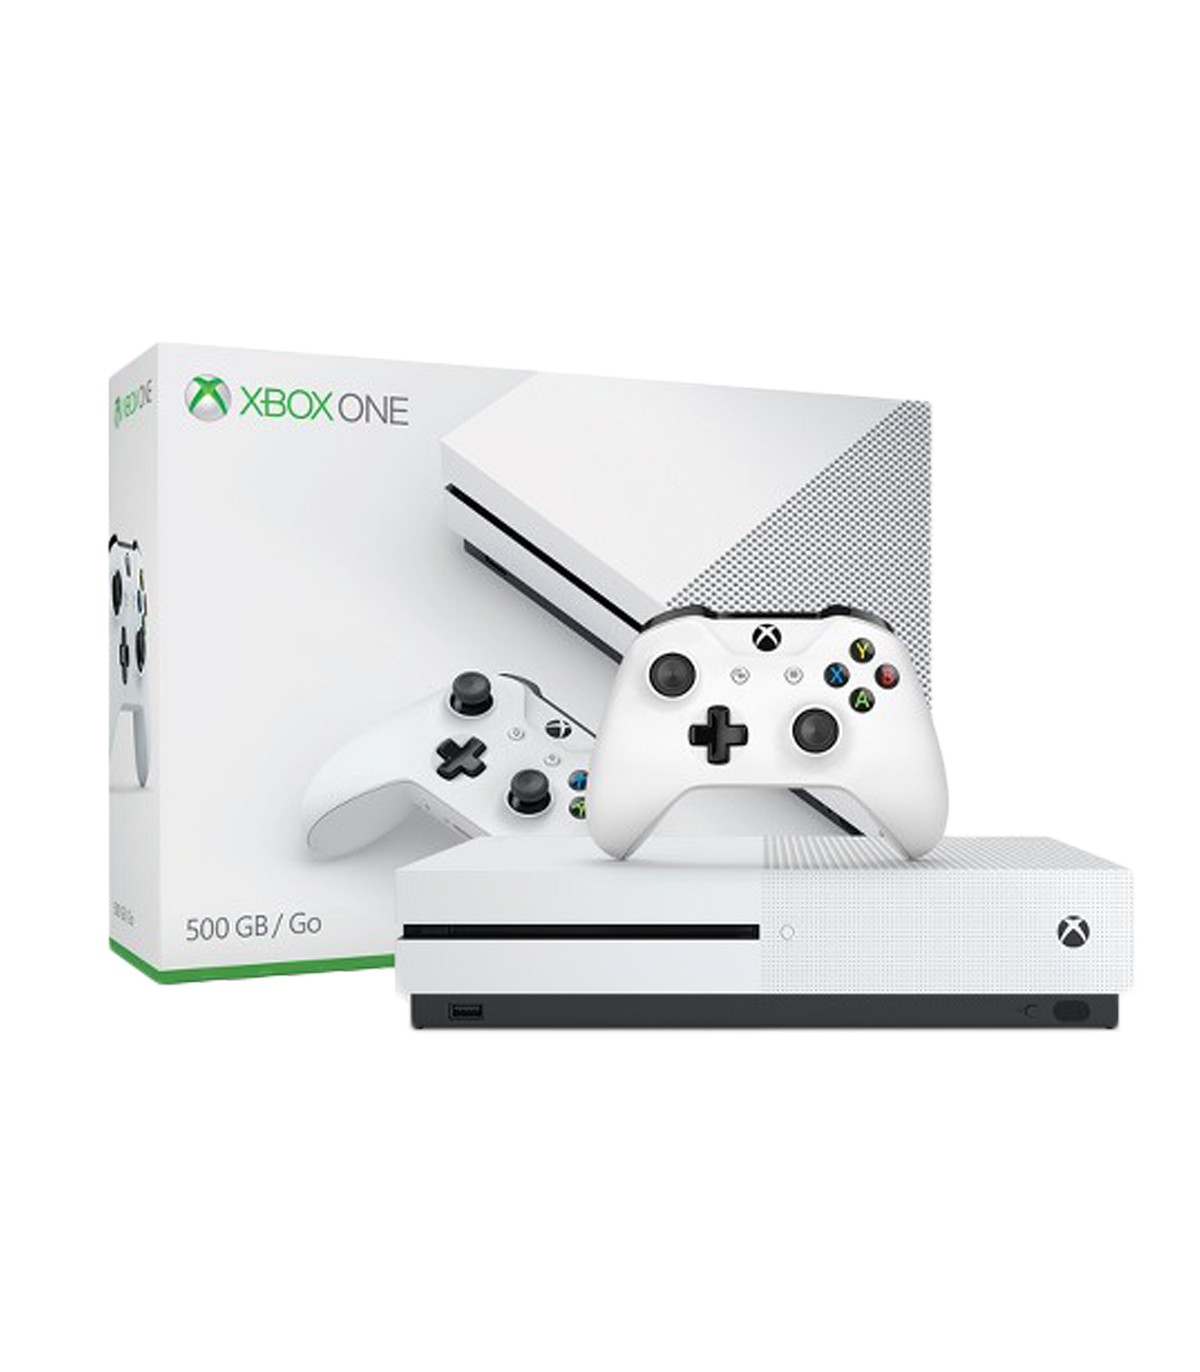 کنسول بازی Microsoft Xbox One S ظرفیت 500GB